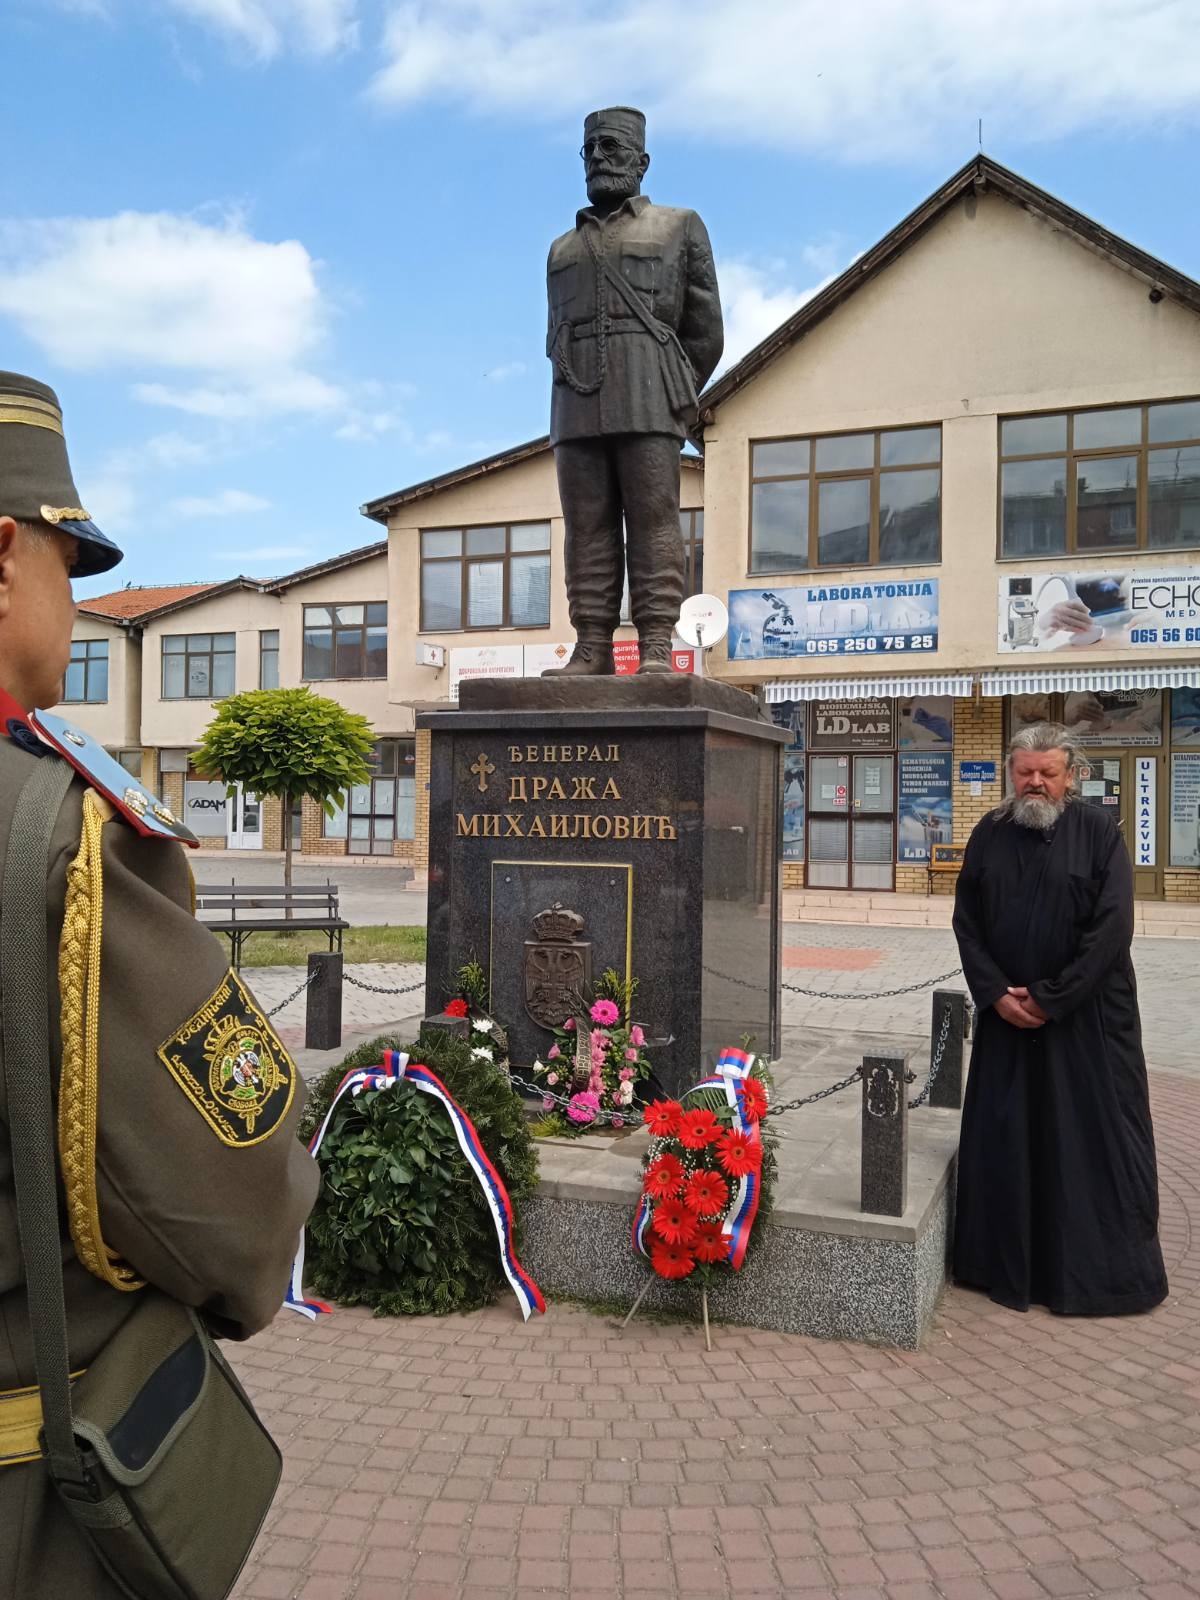 В Сербии почтили память Николая II и Дражи Михайловича